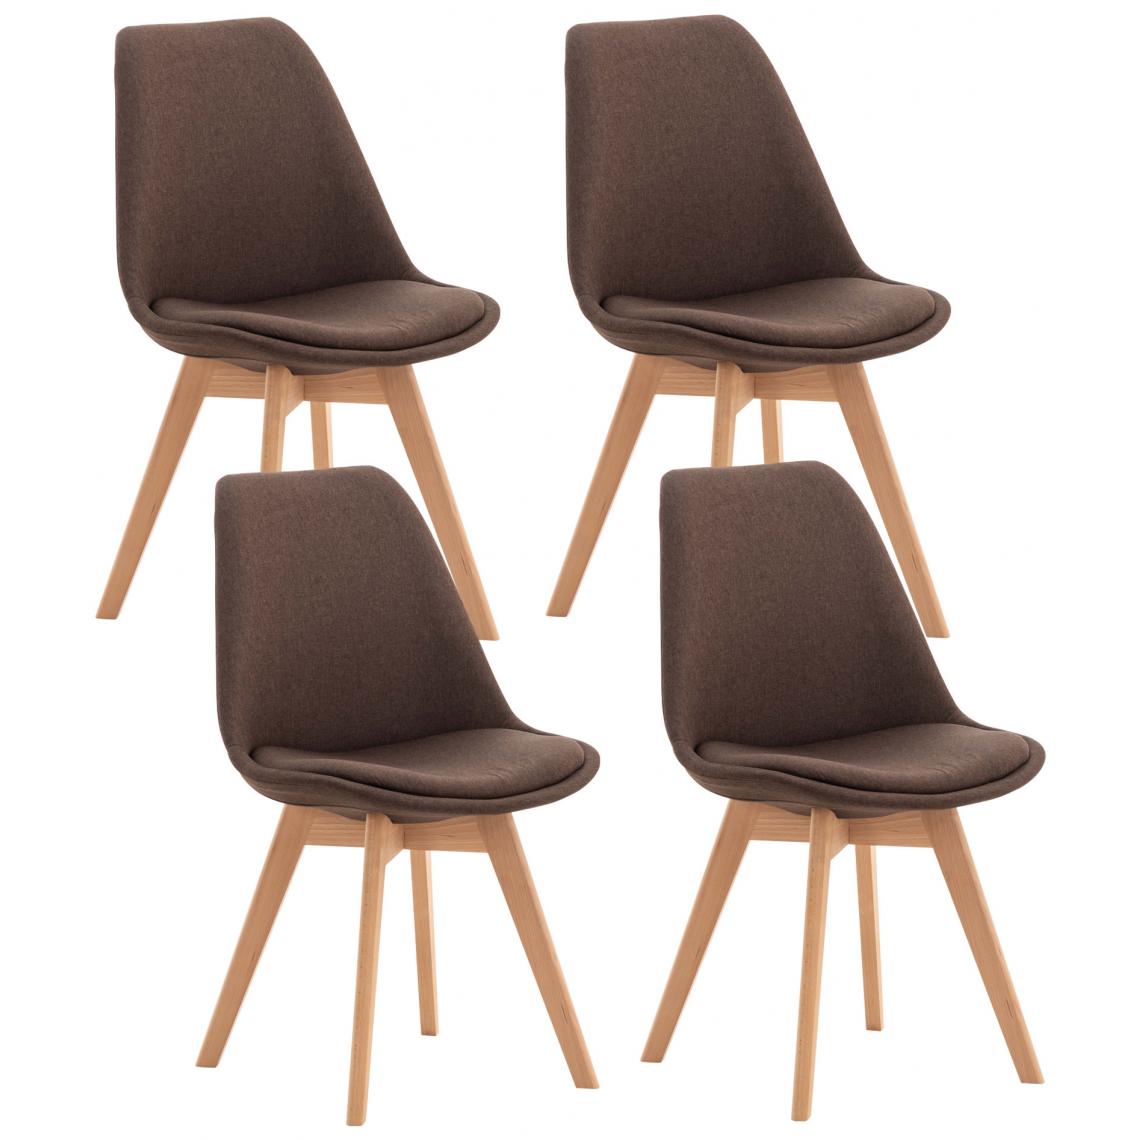 Icaverne - Moderne Lot de 4 chaises en tissu serie Oulan-Bator couleur marron - Tabourets